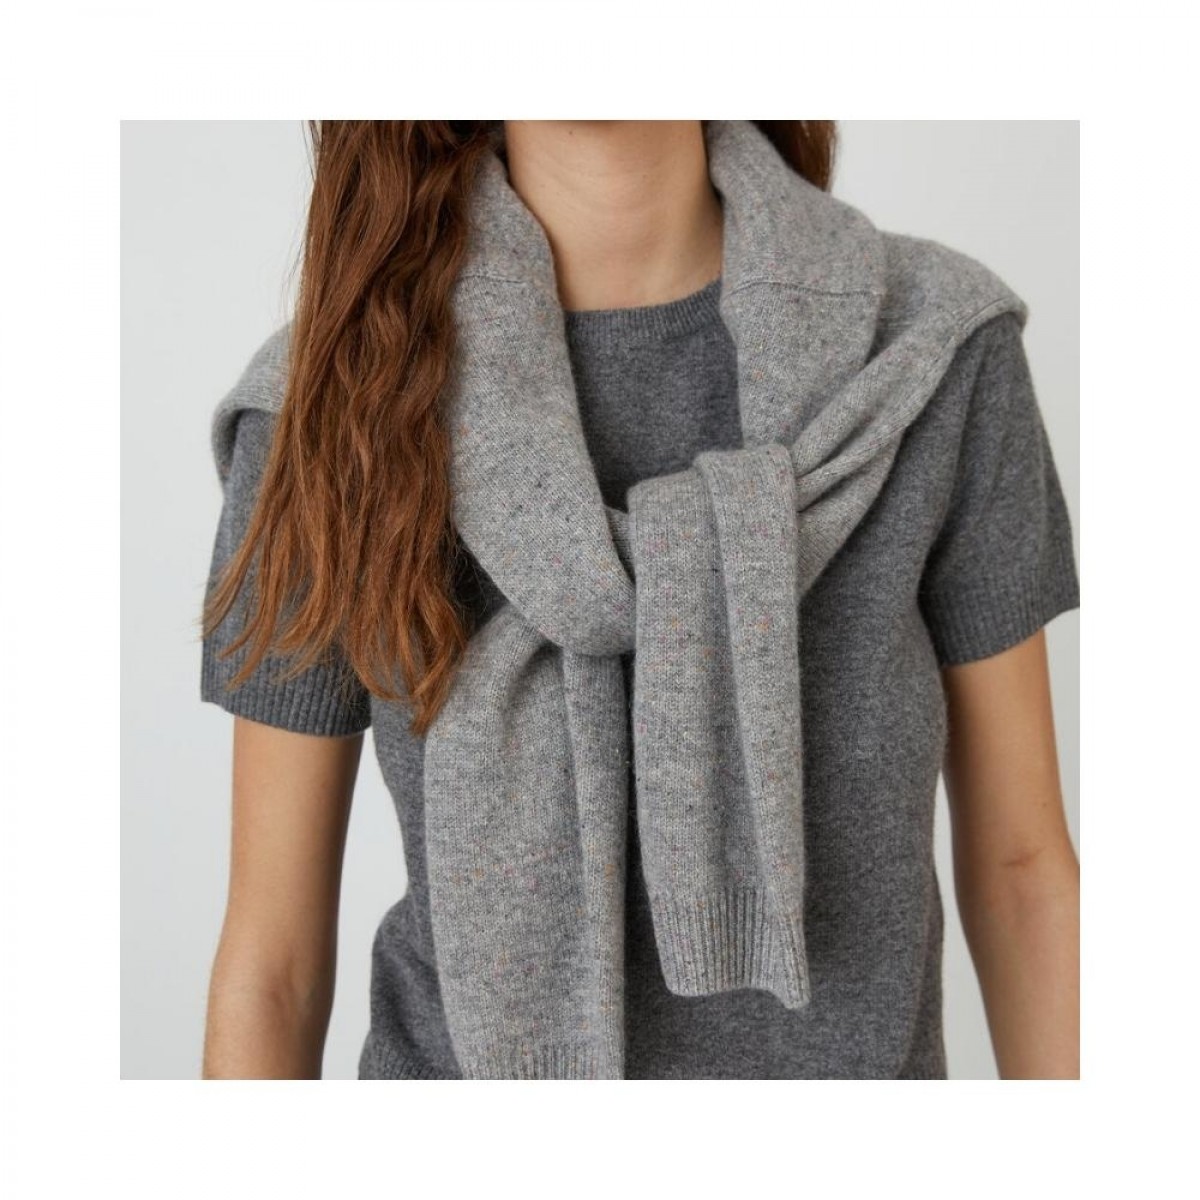 womens blouse - heather grey - model detalje